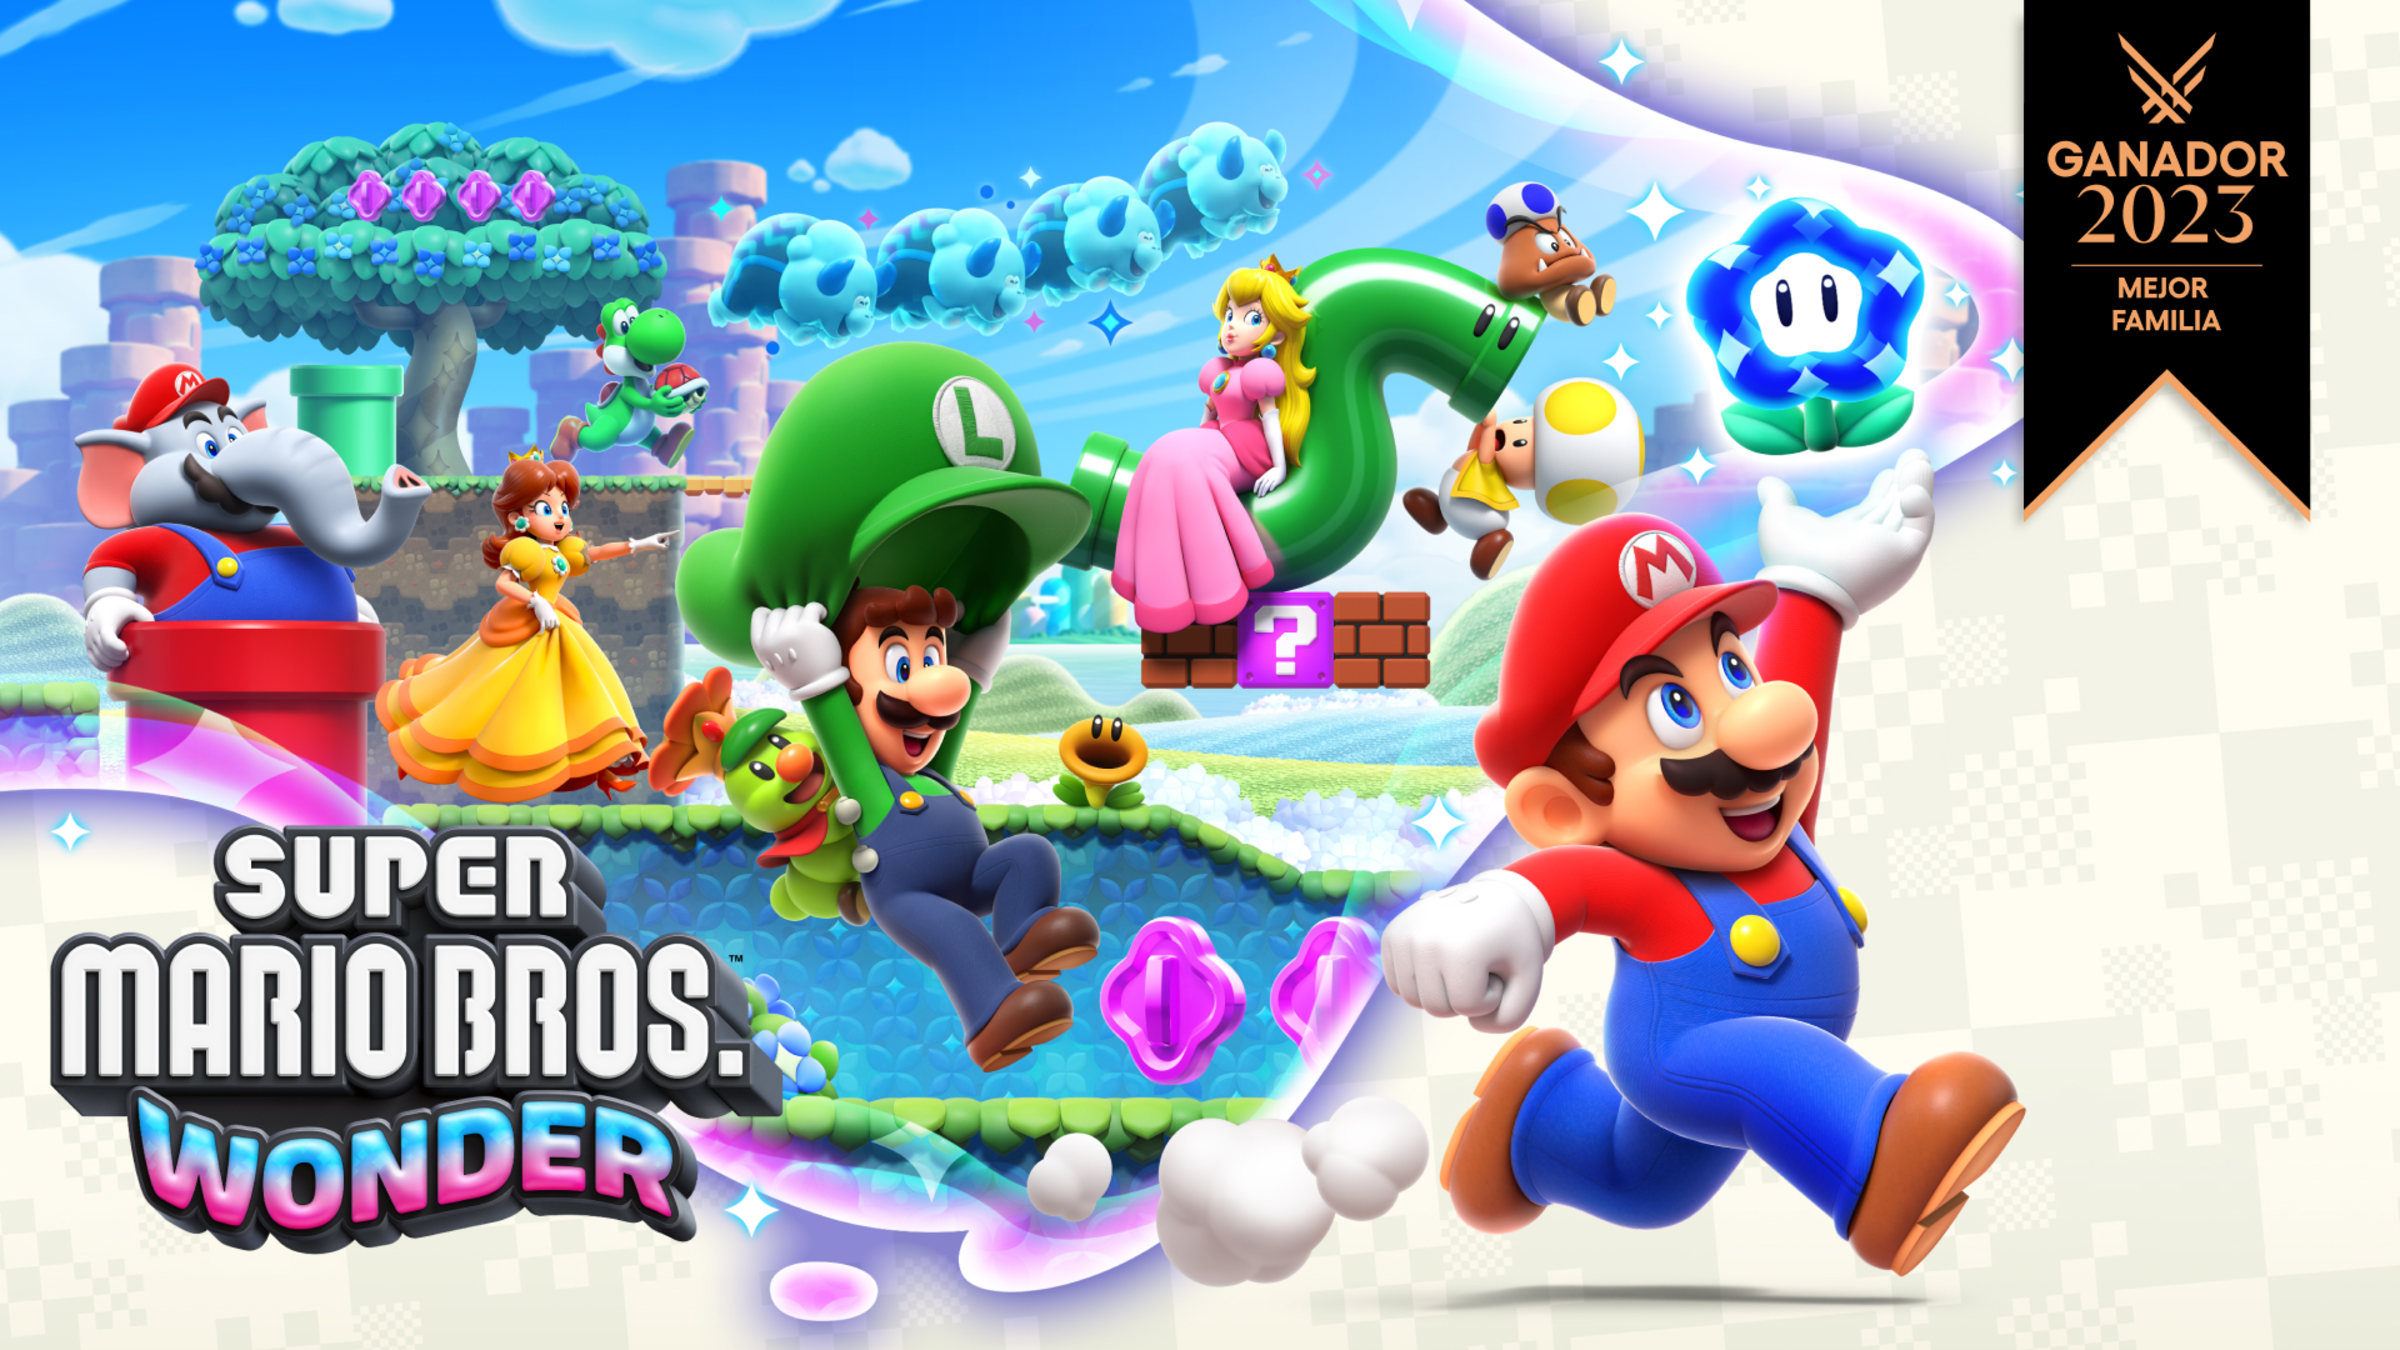 Cómo funciona el multijugador de Super Mario Bros Wonder online y